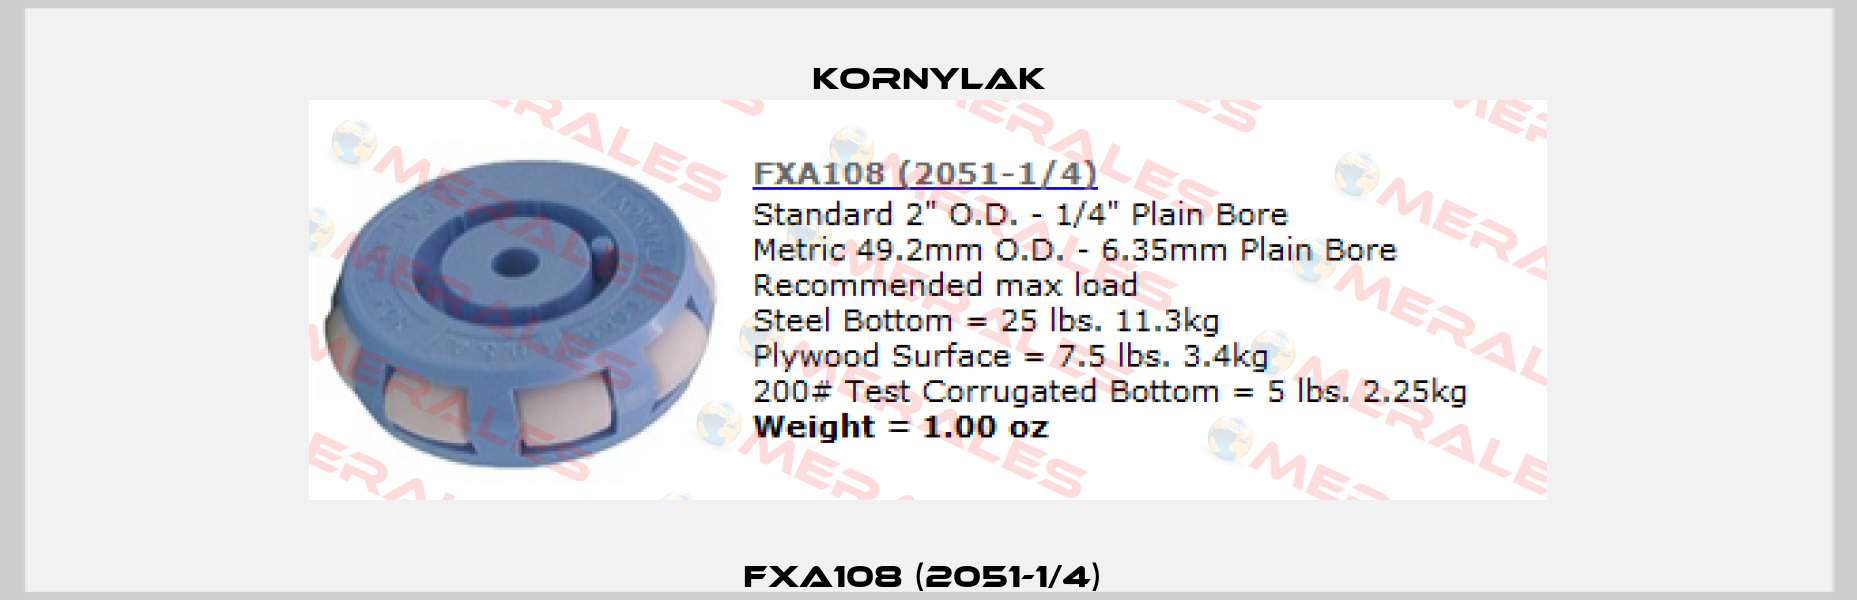 FXA108 (2051-1/4)  Kornylak